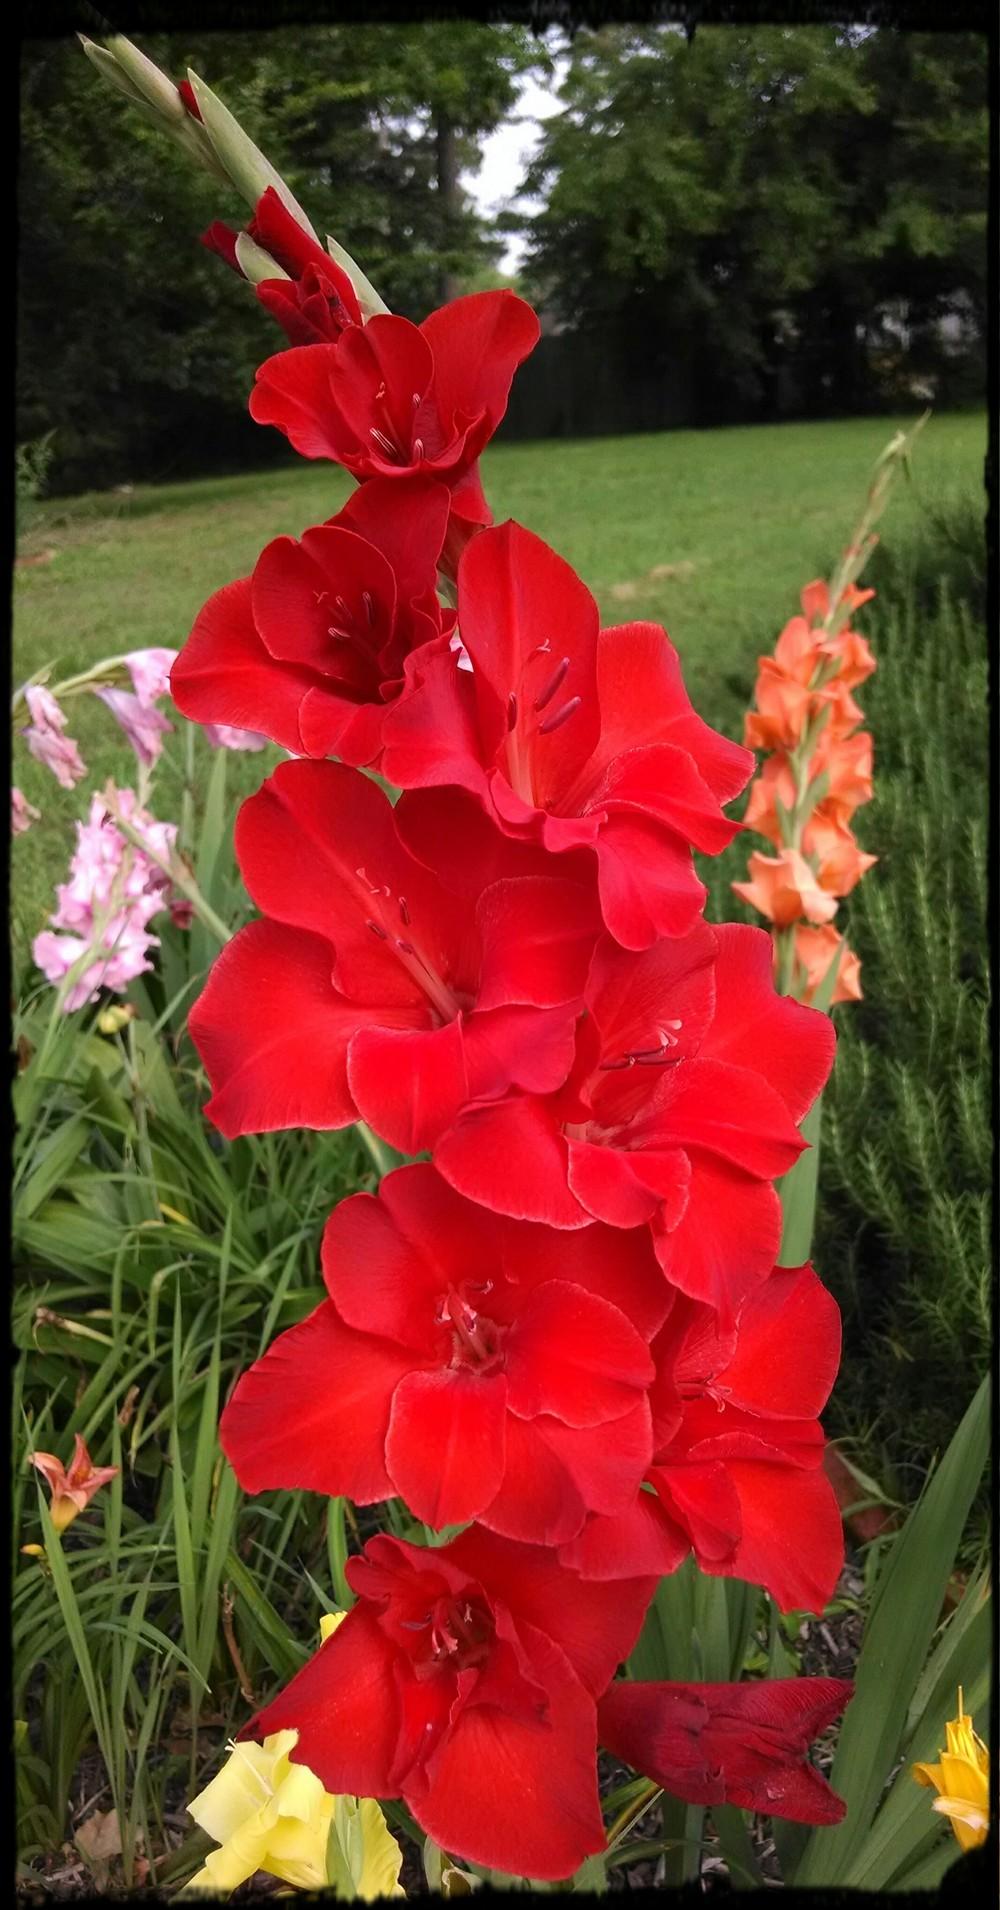 Photo of Gladiola (Gladiolus) uploaded by sarahbugw